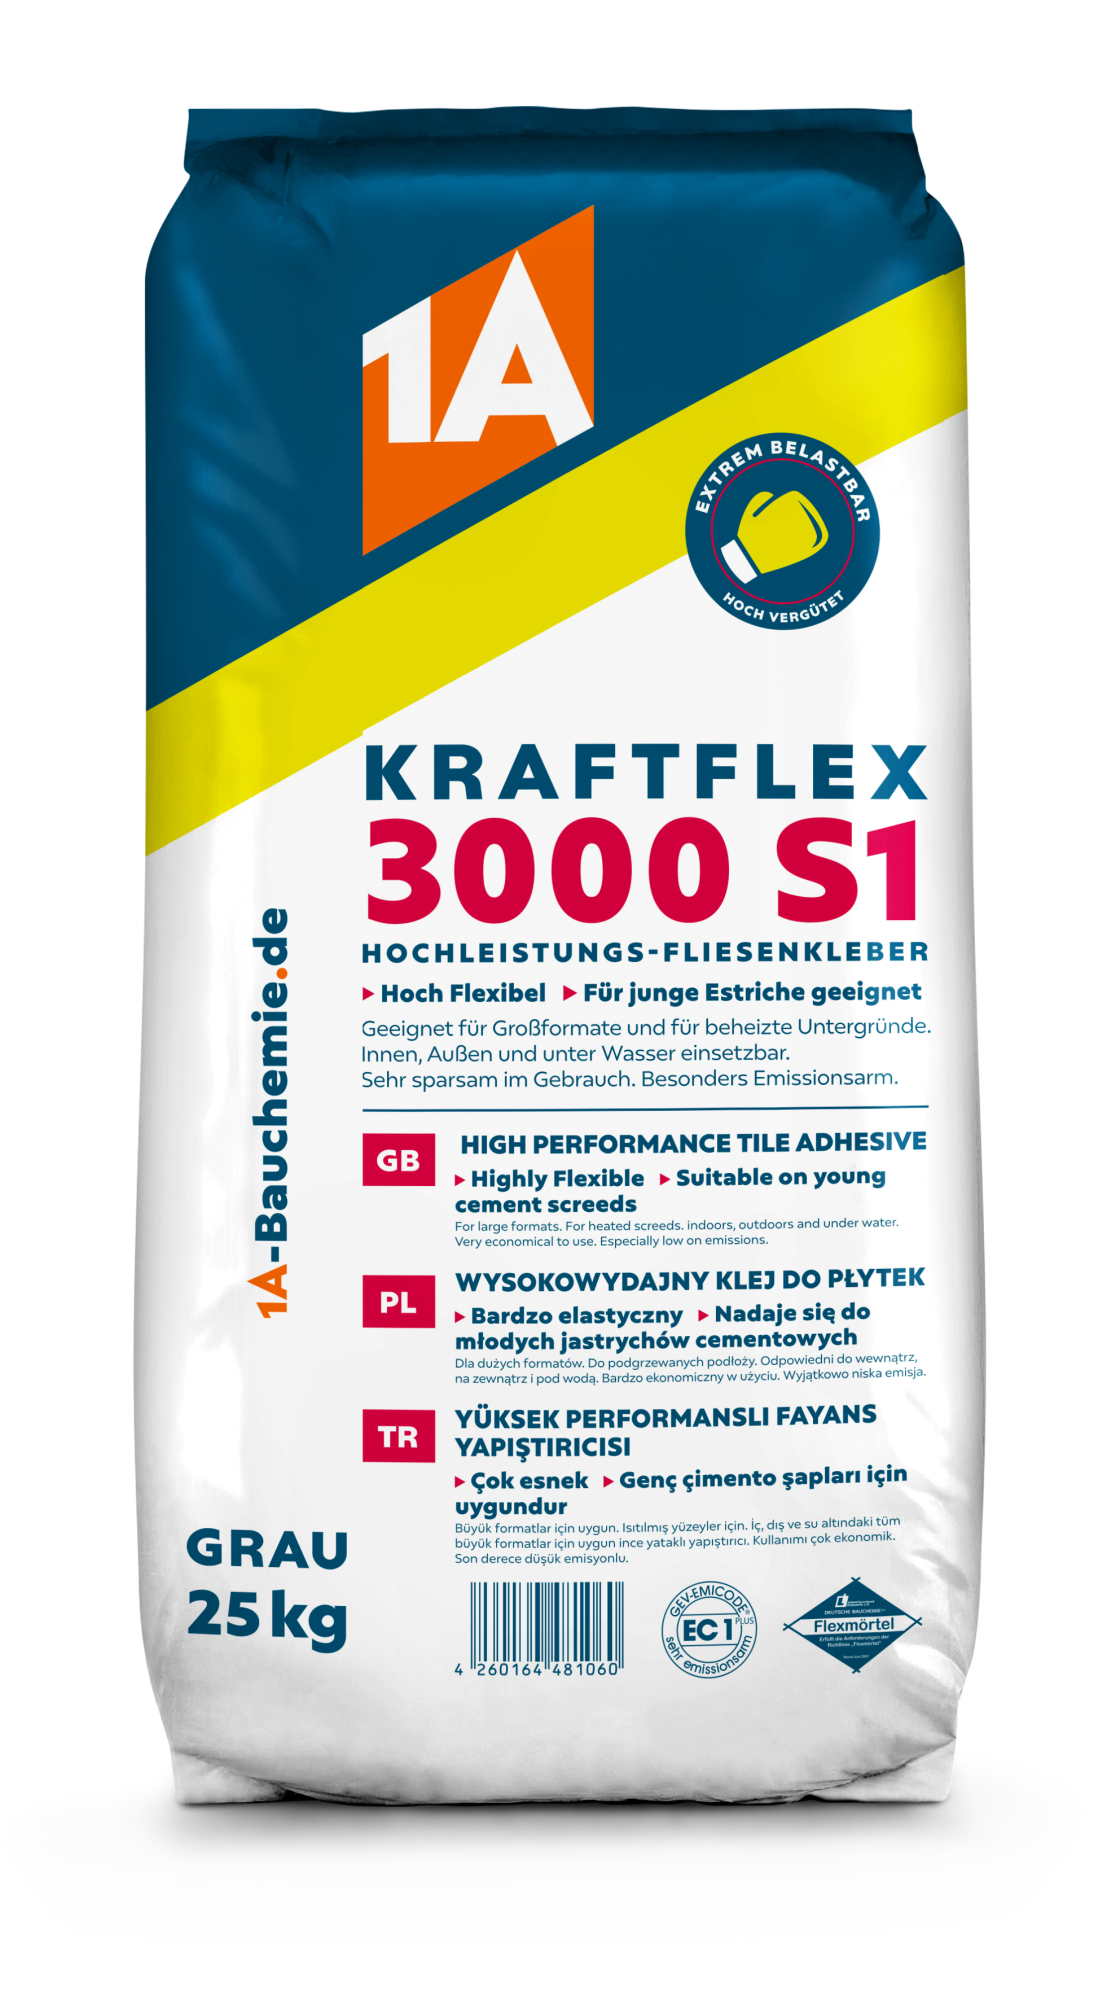 1A KRAFTFLEX 3000 S1 25kg Hochleistungs-Fliesenkleber